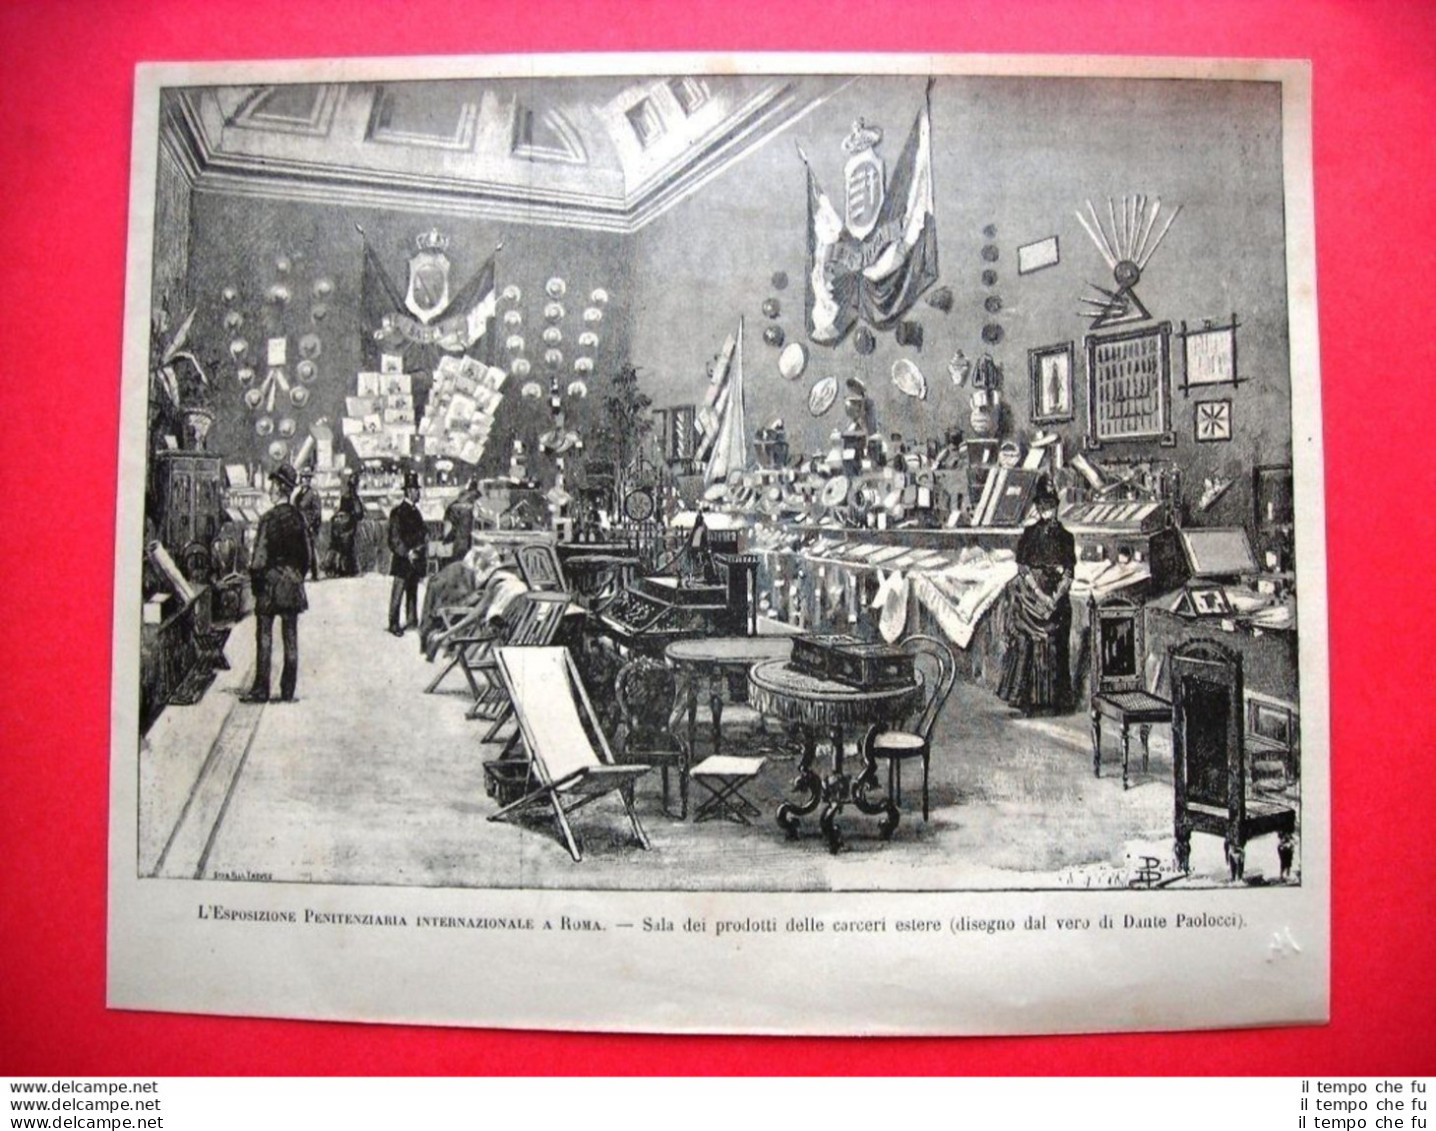 L'Esposizione Penitenziaria Internazionale A Roma Nel 1885 - Sala Dei Prodotti - Before 1900